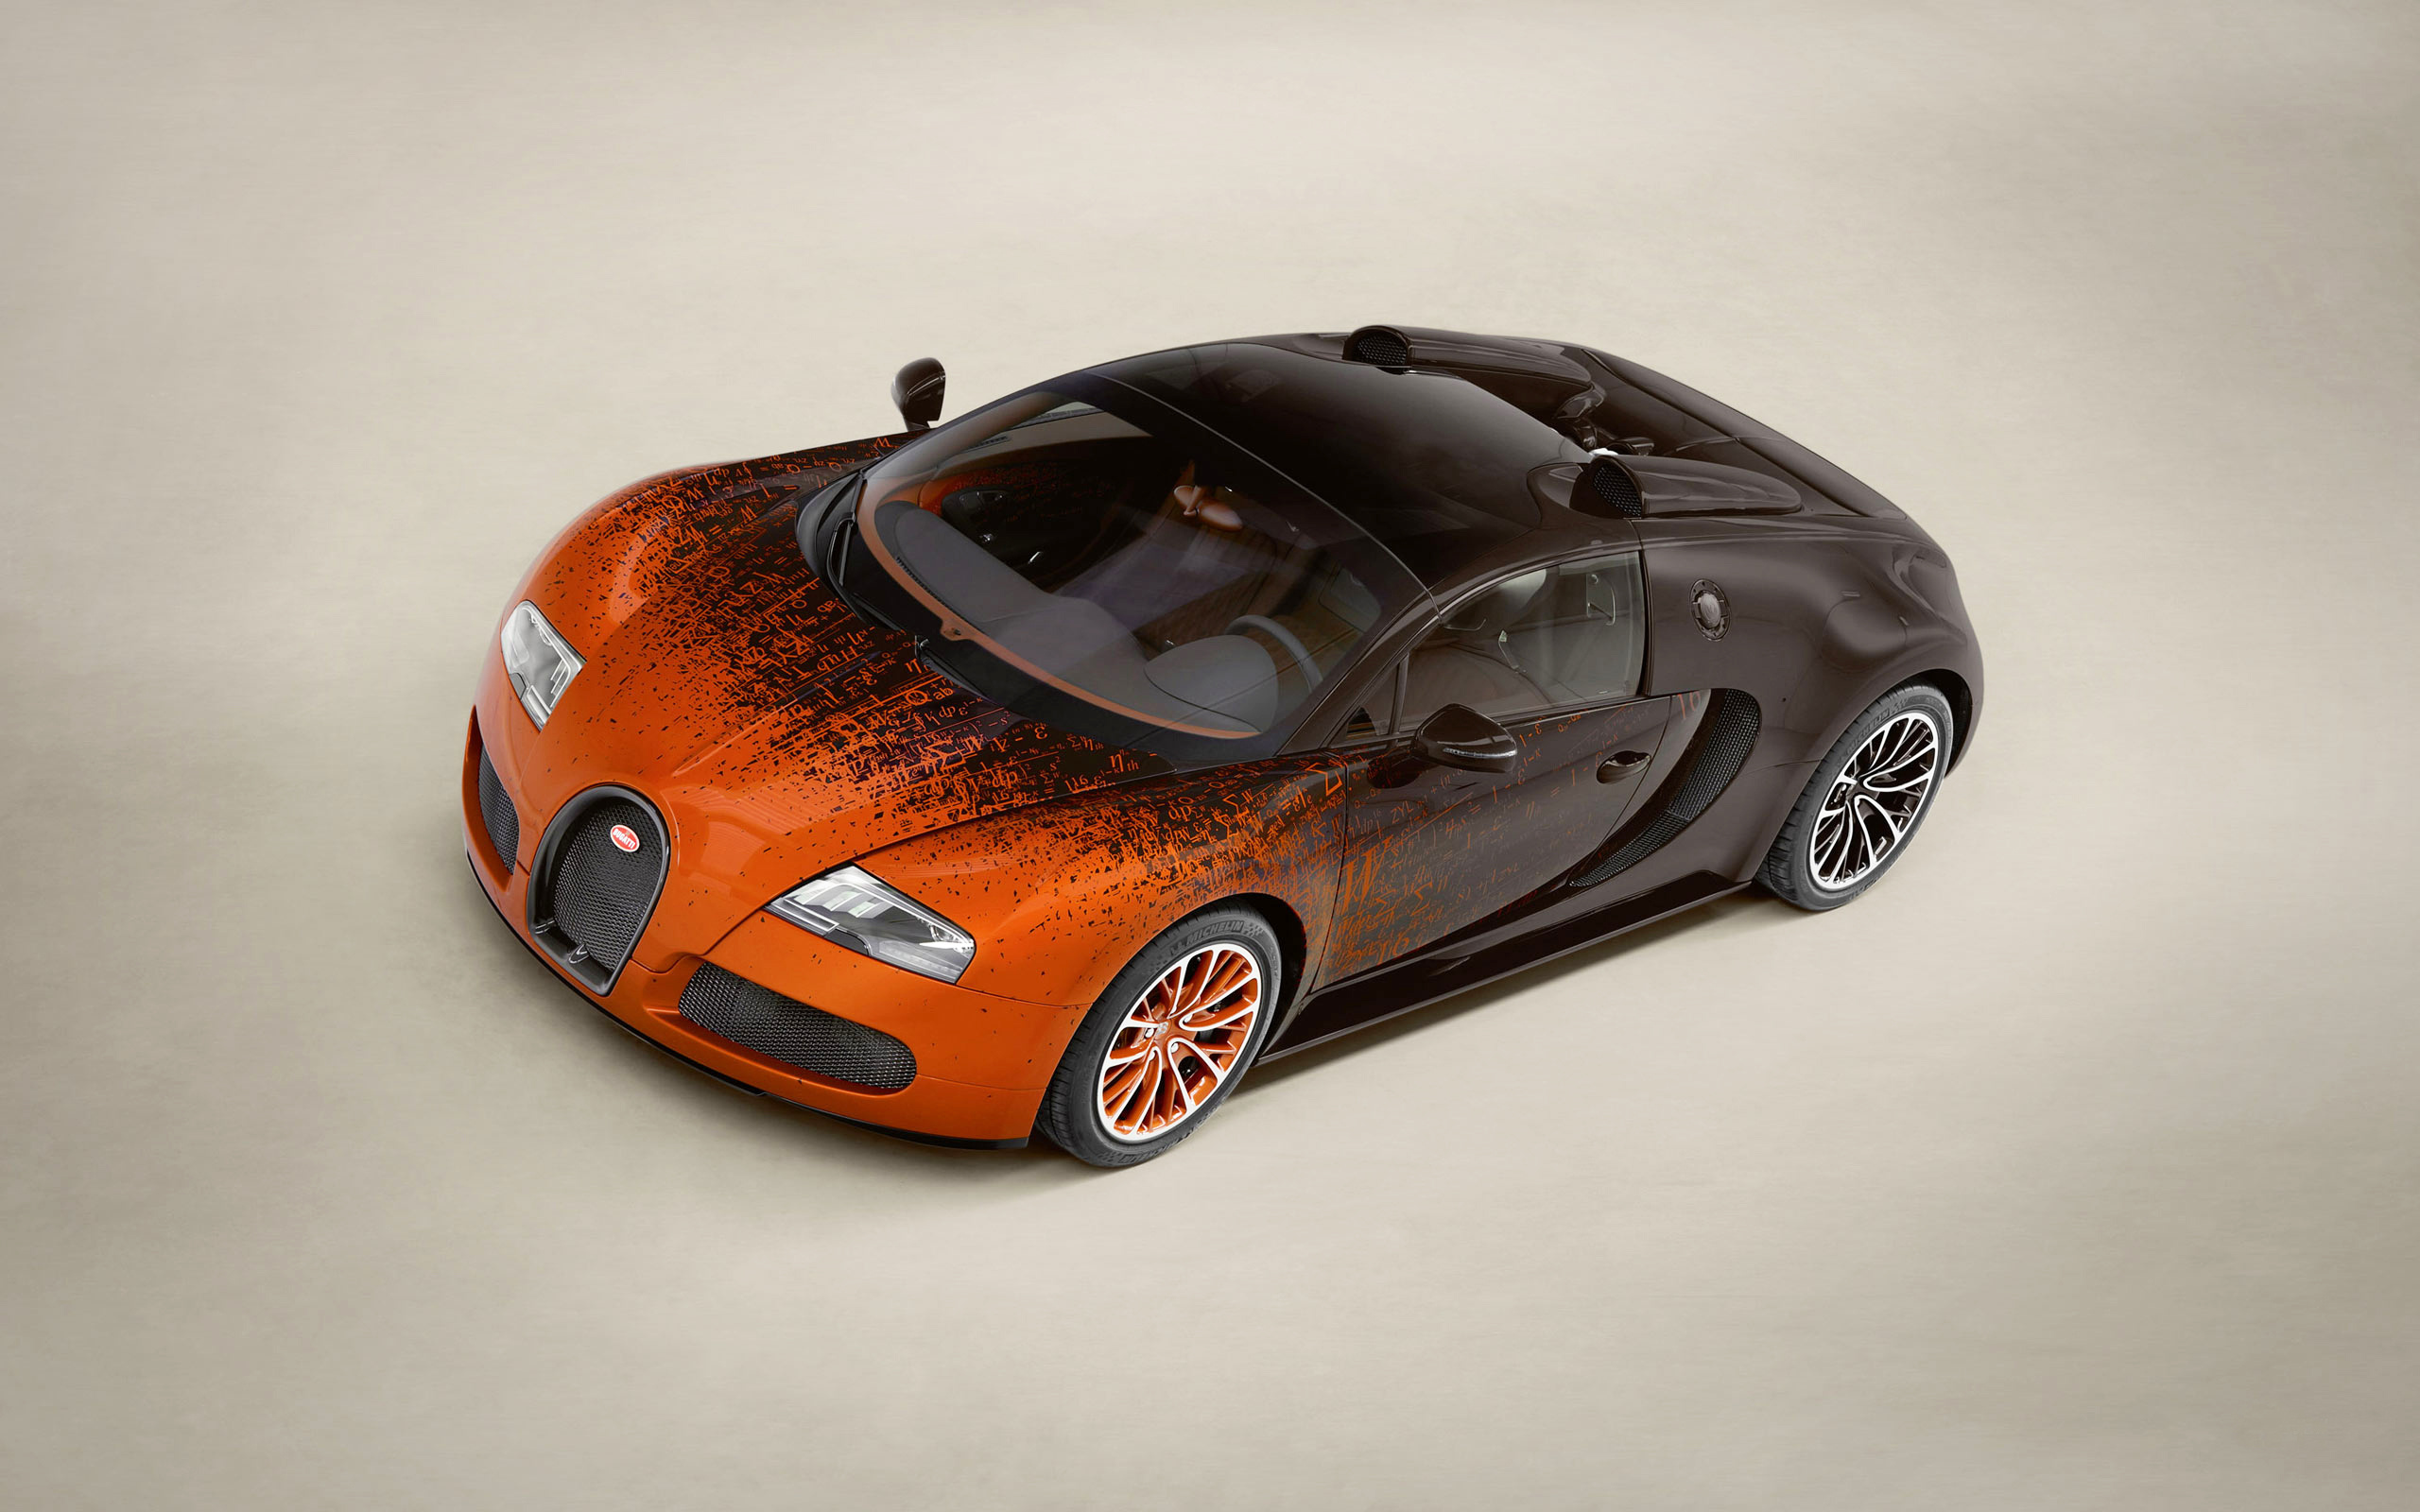 Meilleurs fonds d'écran Bugatti Veyron 16 4 Grand Sport pour l'écran du téléphone